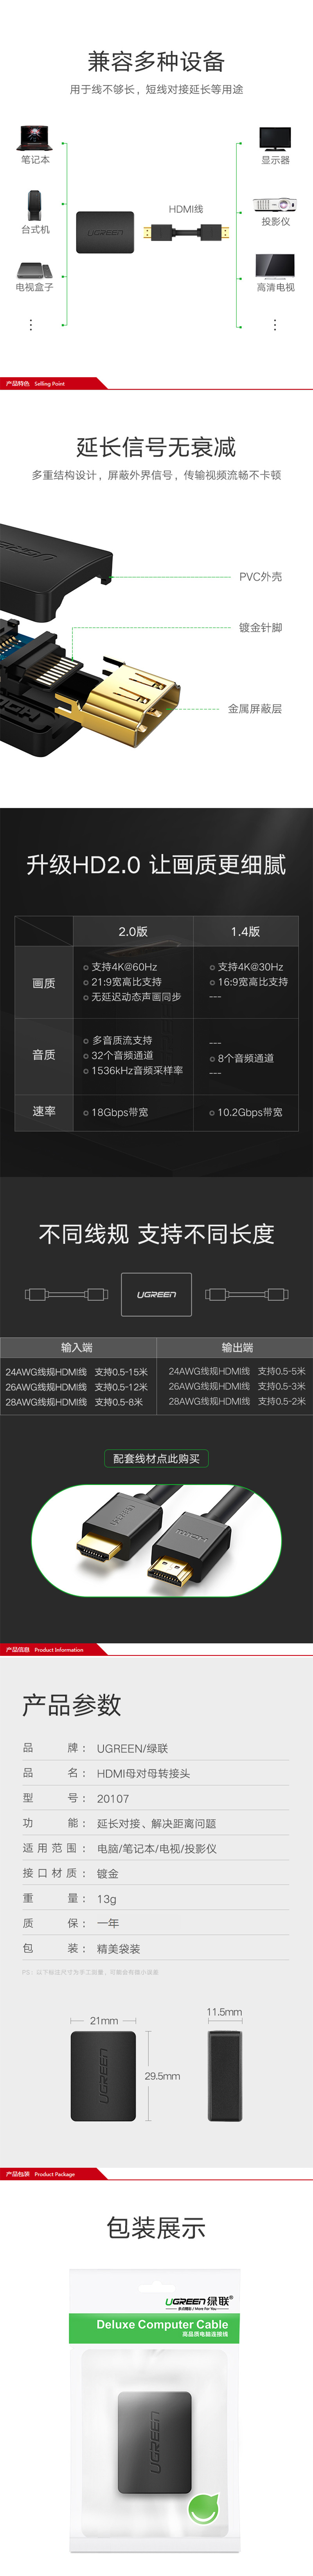 绿联20107 碳黑USB3.0 2口集线器 详情页